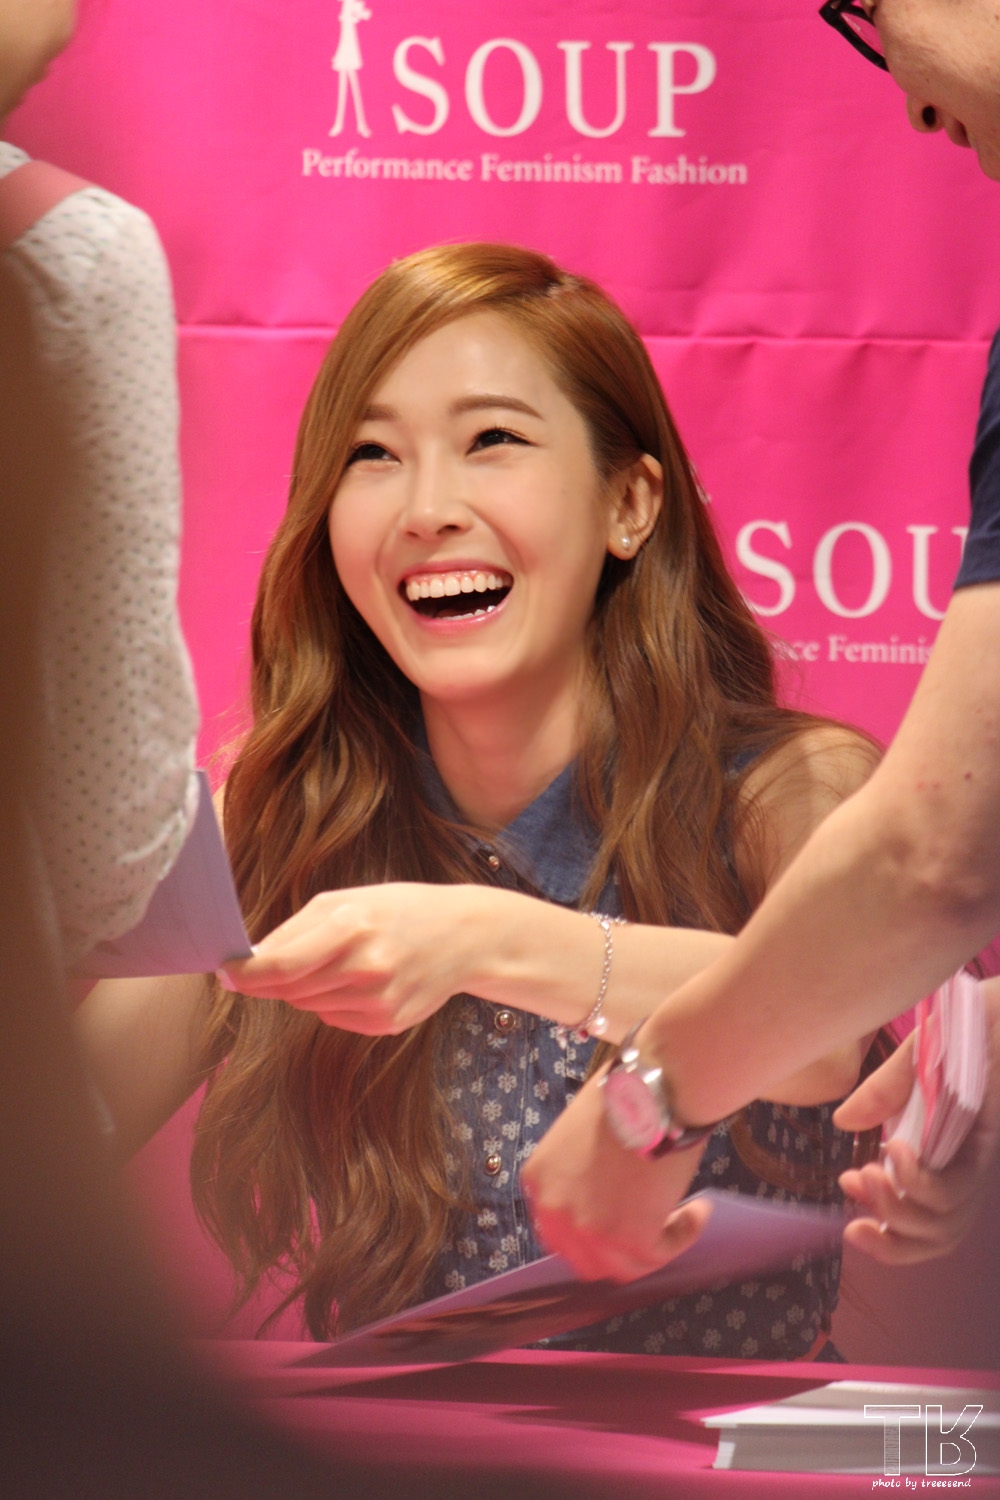 [PIC][14-06-2014]Jessica tham dự buổi fansign lần 2 cho thương hiệu "SOUP" vào trưa nay 2624BE3B53AE9104078028